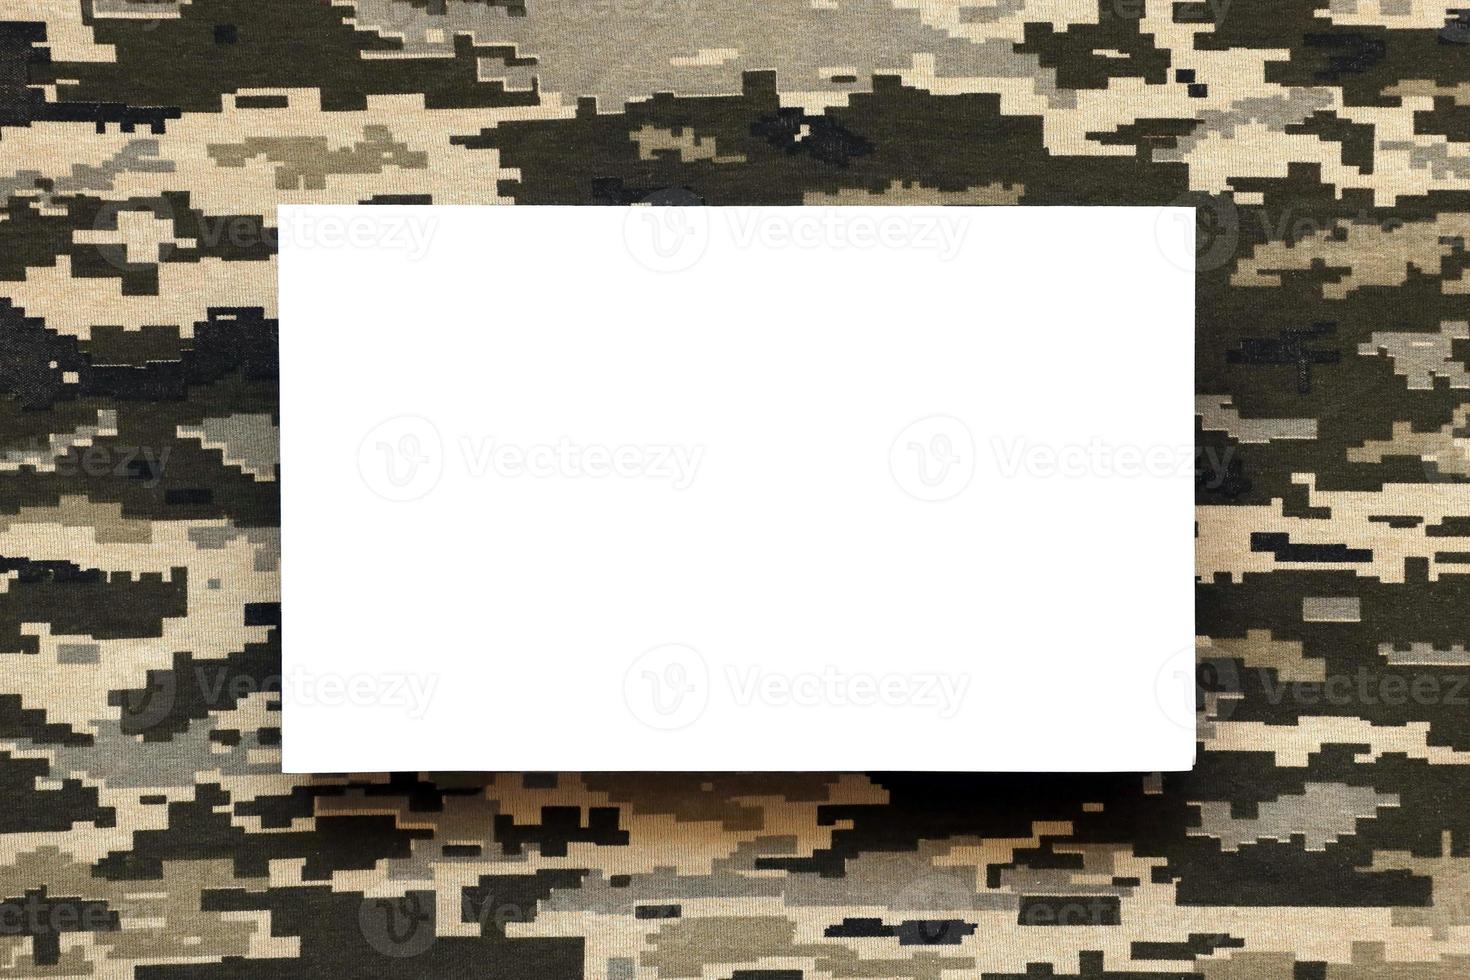 tecido com textura de camuflagem pixelizada militar ucraniana e papel em branco branco. pano com padrão de camuflagem em formas de pixel cinza, marrom e verde. foto